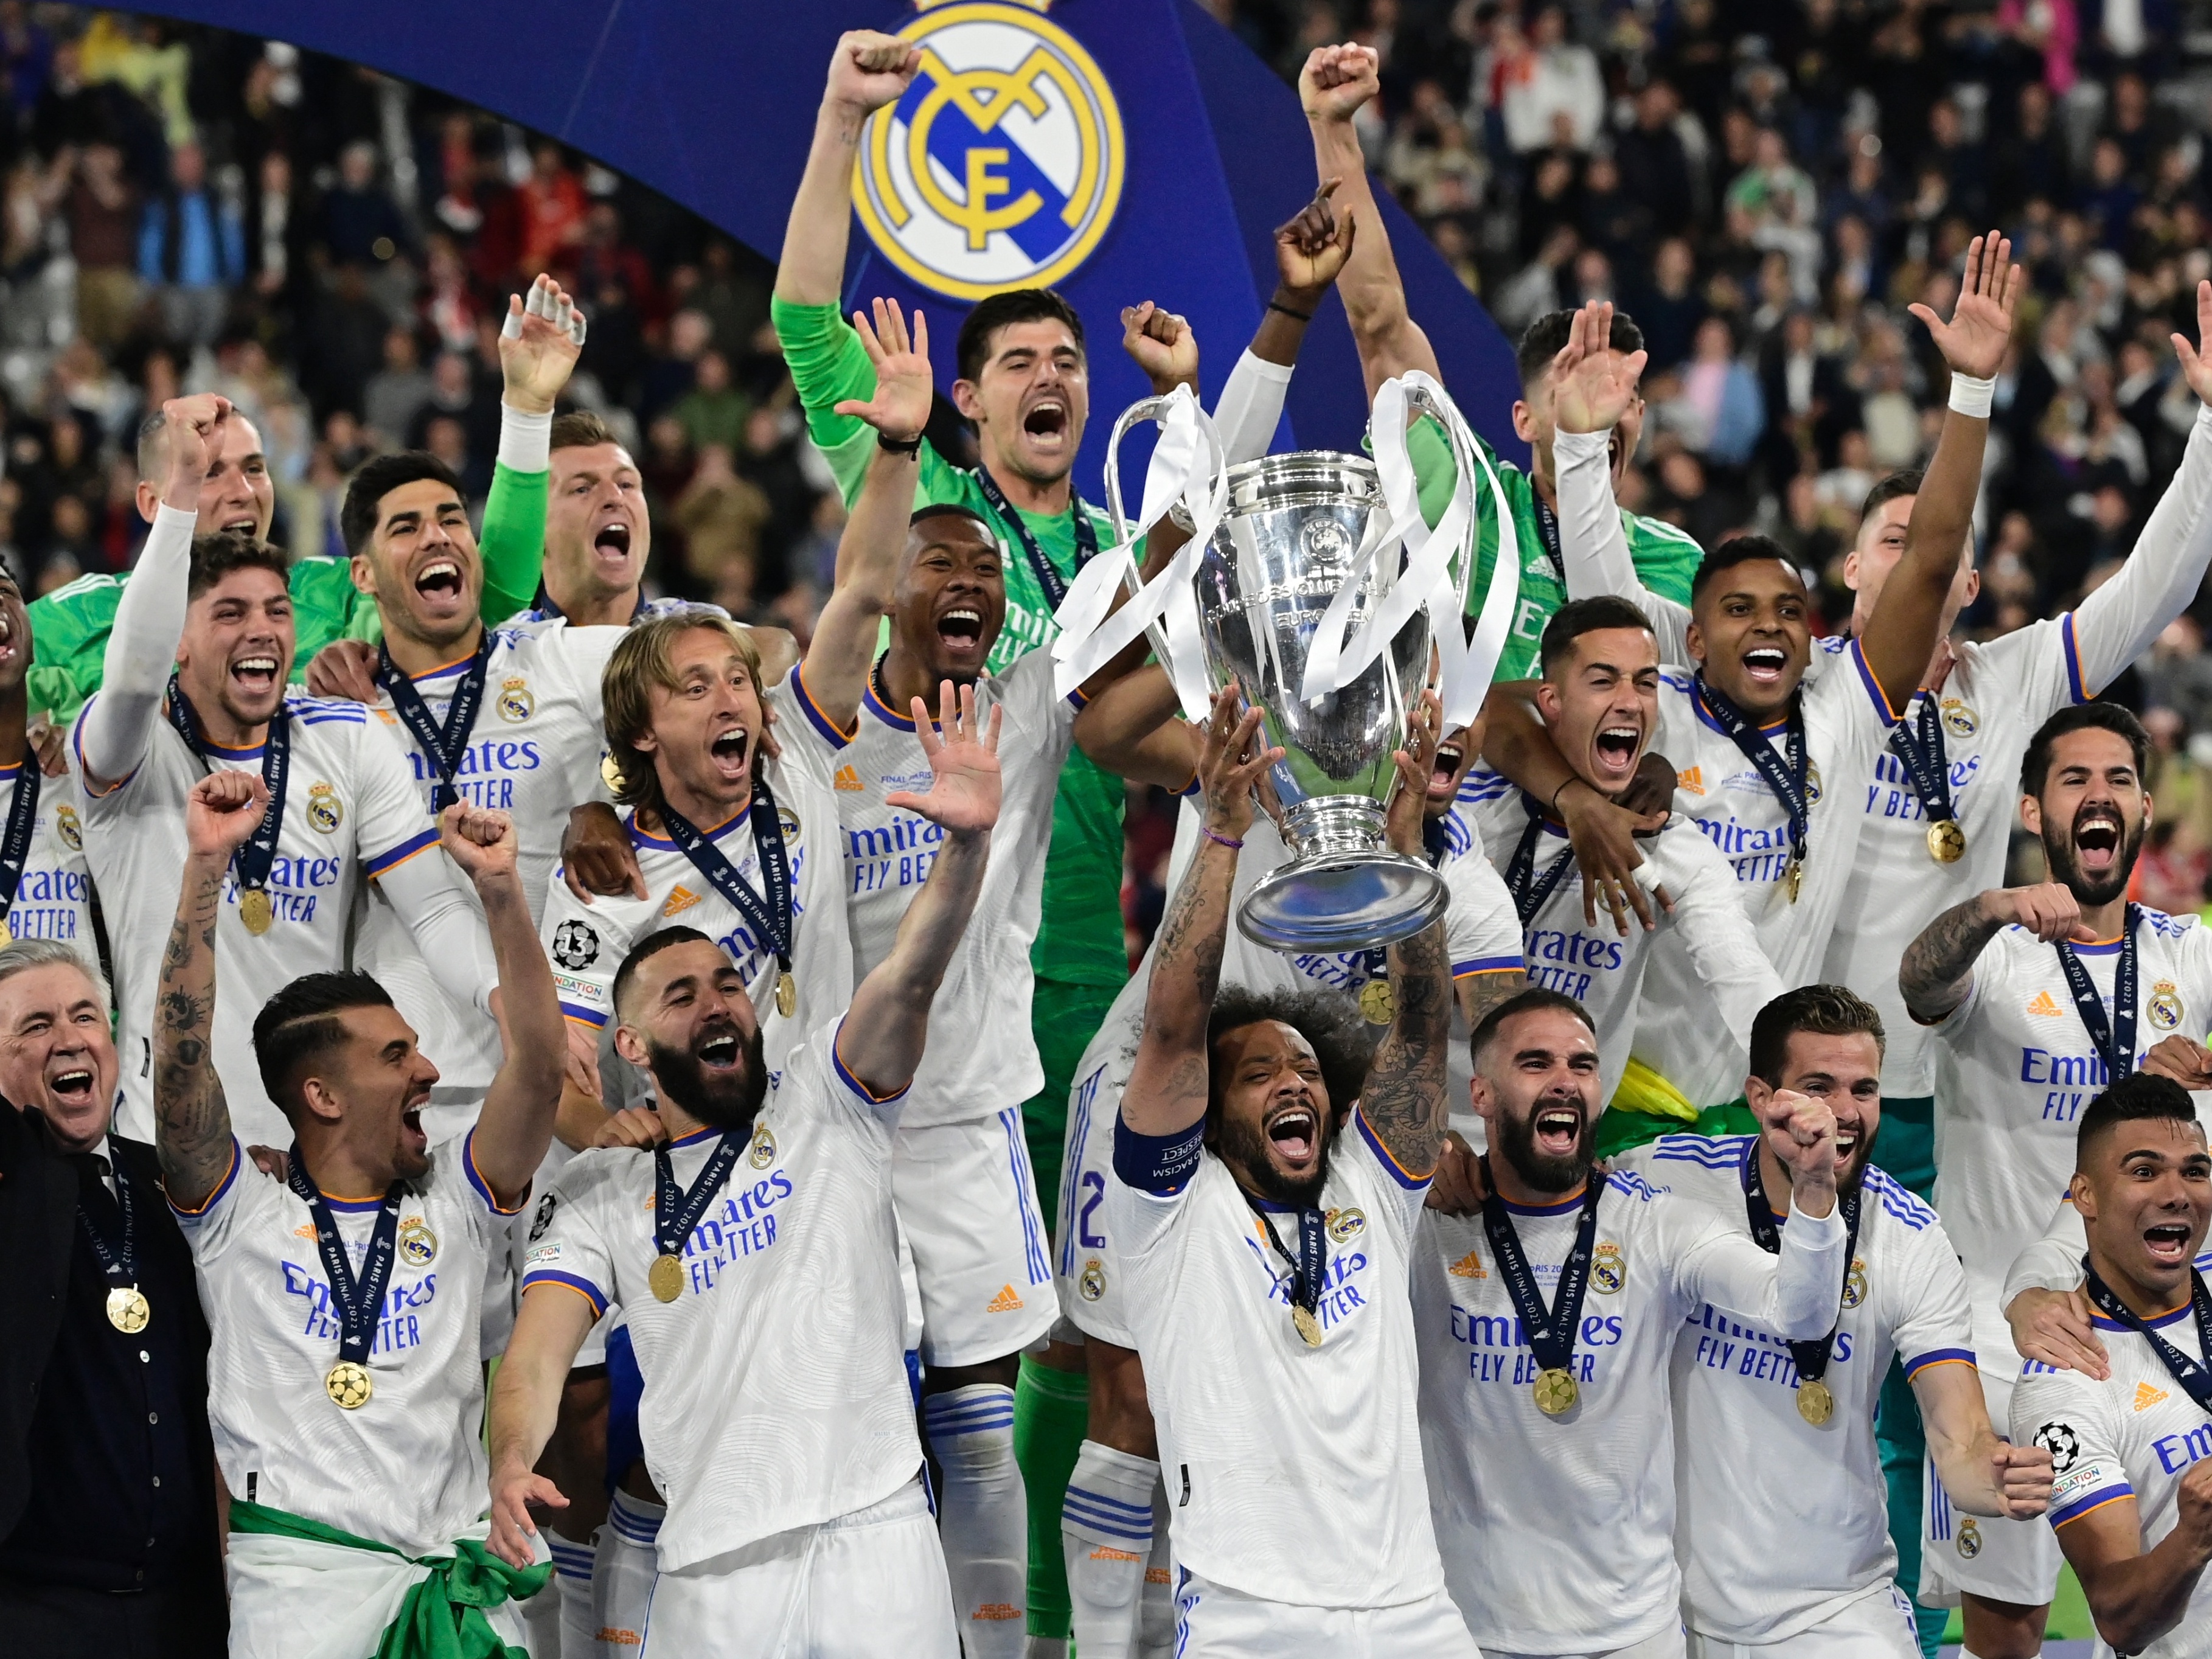 Futebol na TV: Há Taça em Portugal e clássicos na Europa - Futebol